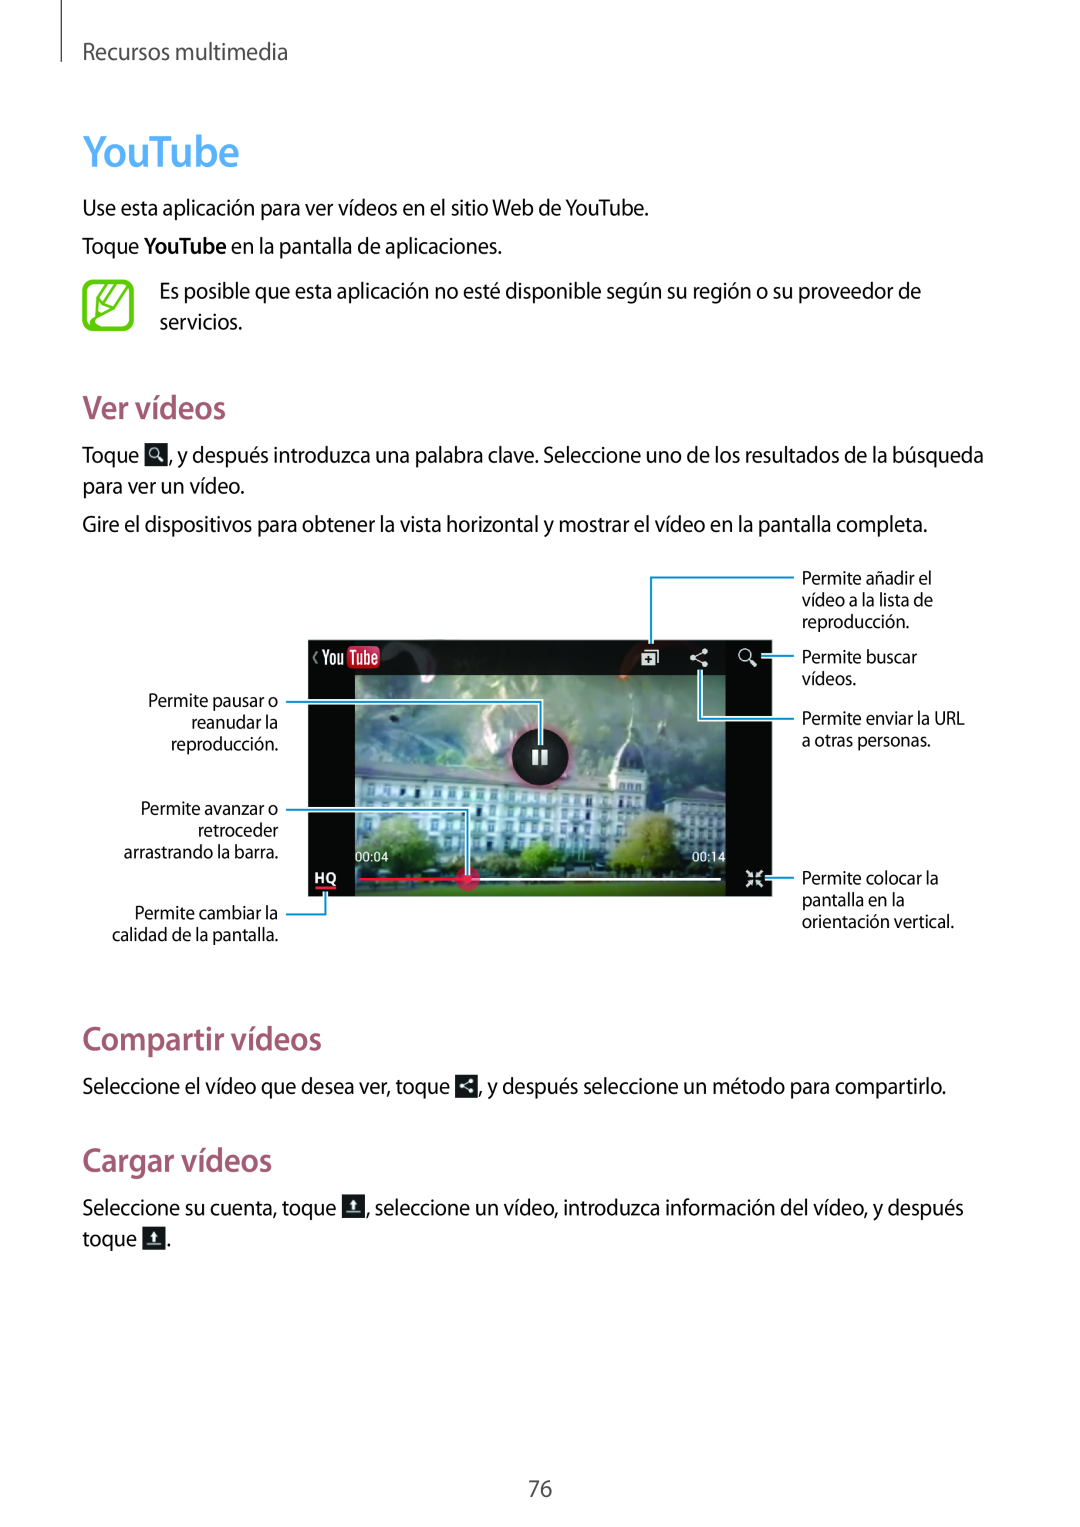 Samsung GT-I8730ZWAPHE, GT-I8730TAAMEO manual YouTube, Ver vídeos, Cargar vídeos, Compartir vídeos, Recursos multimedia 